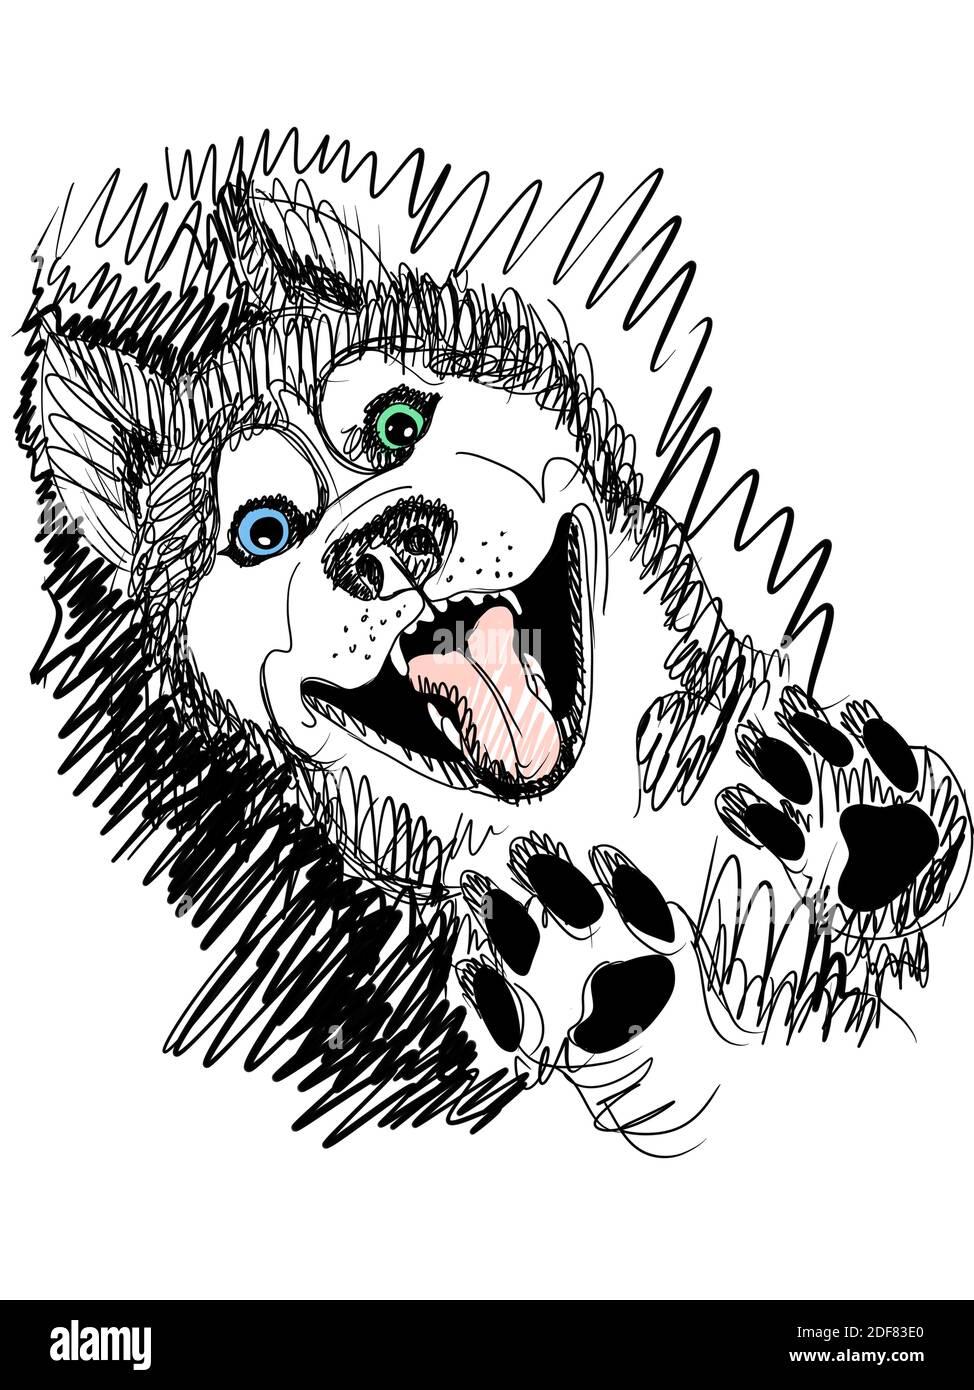 Illustrazione digitale disegnata a mano di un divertente husky shaggy con la sua lingua che si stacca Foto Stock